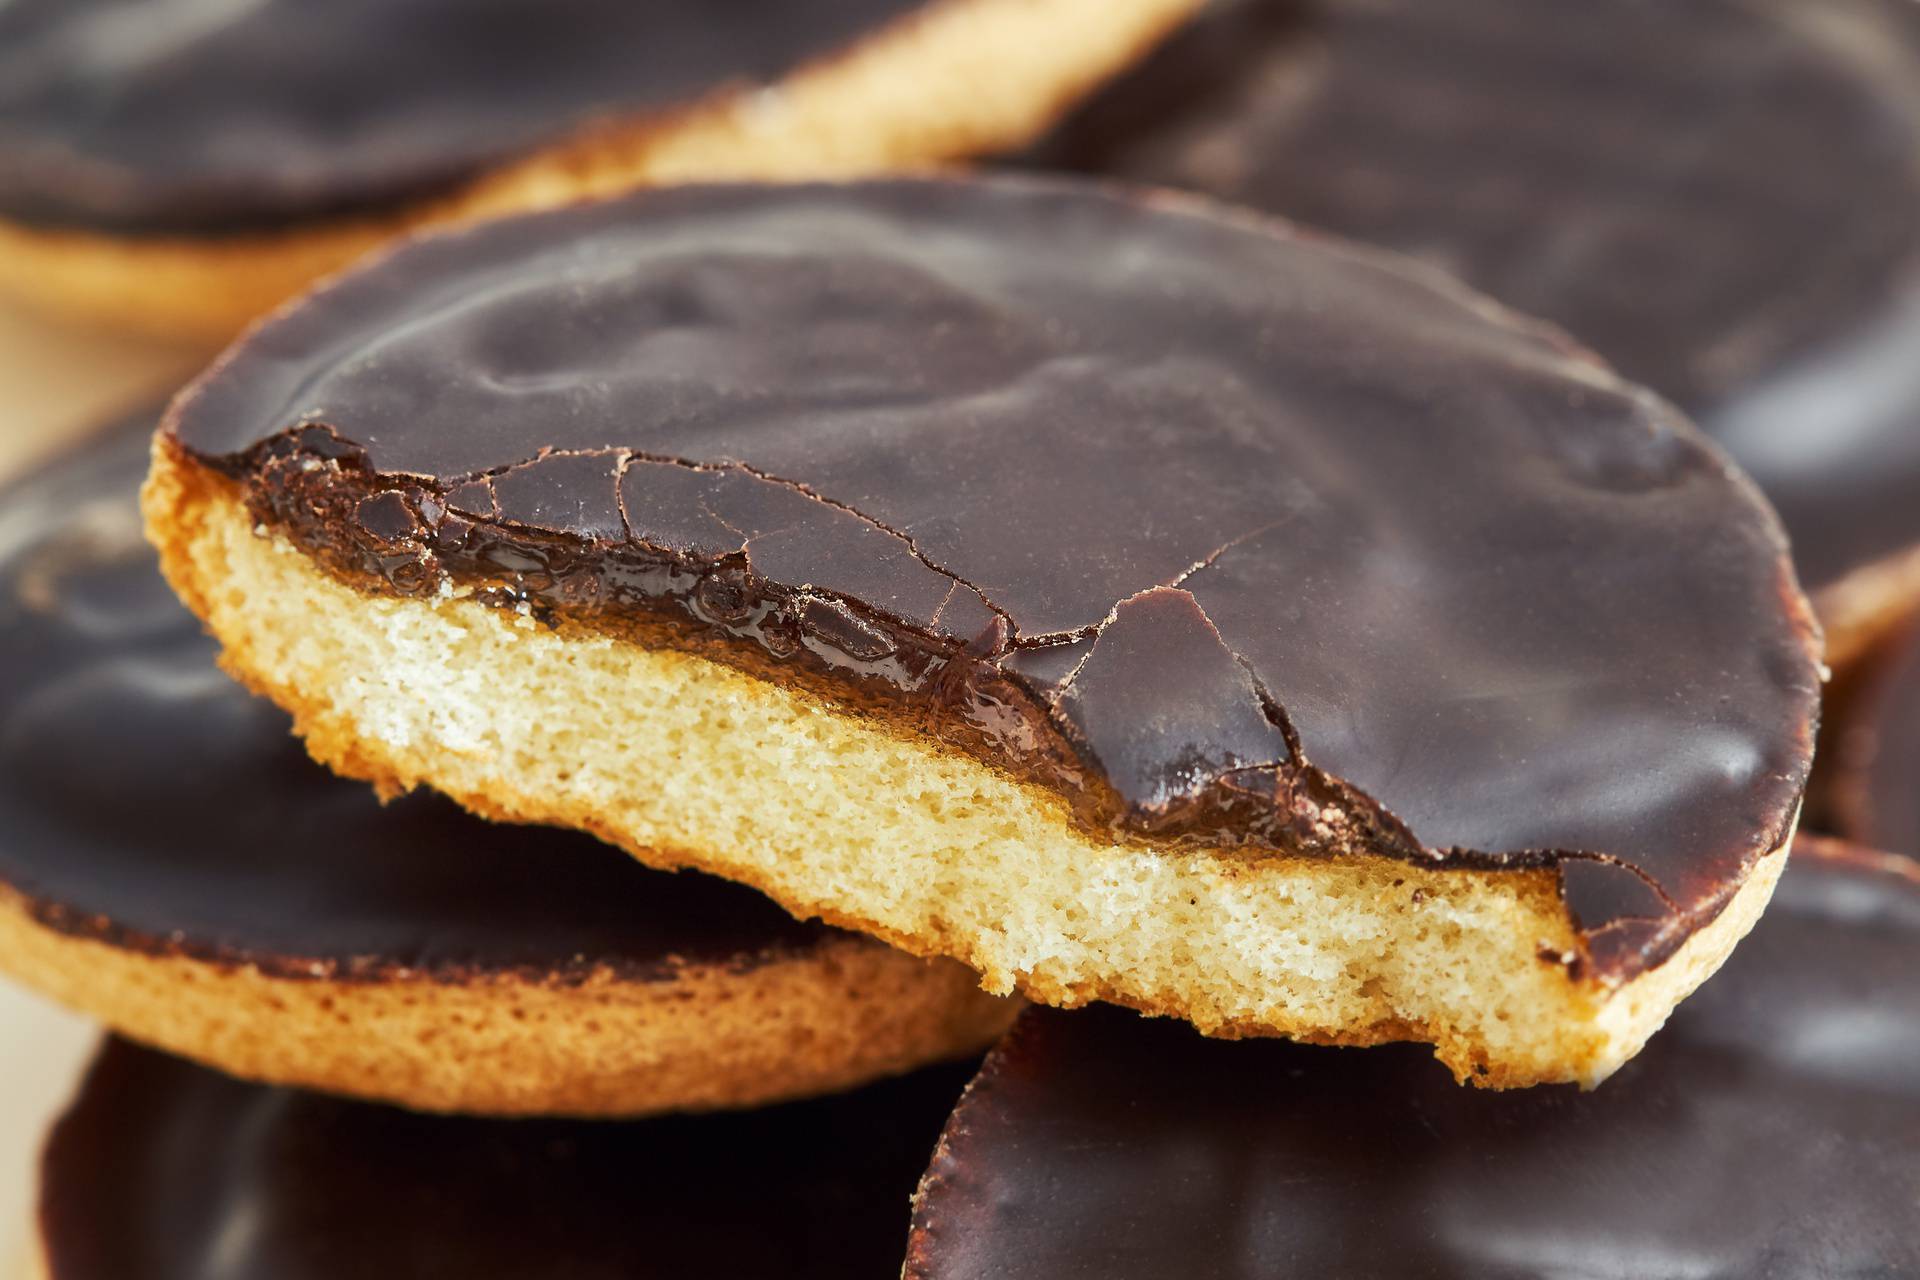 Postoji preko 500 načina na koji jedemo Jaffa kekse, ali dva su najčešća i nešto govore o nama